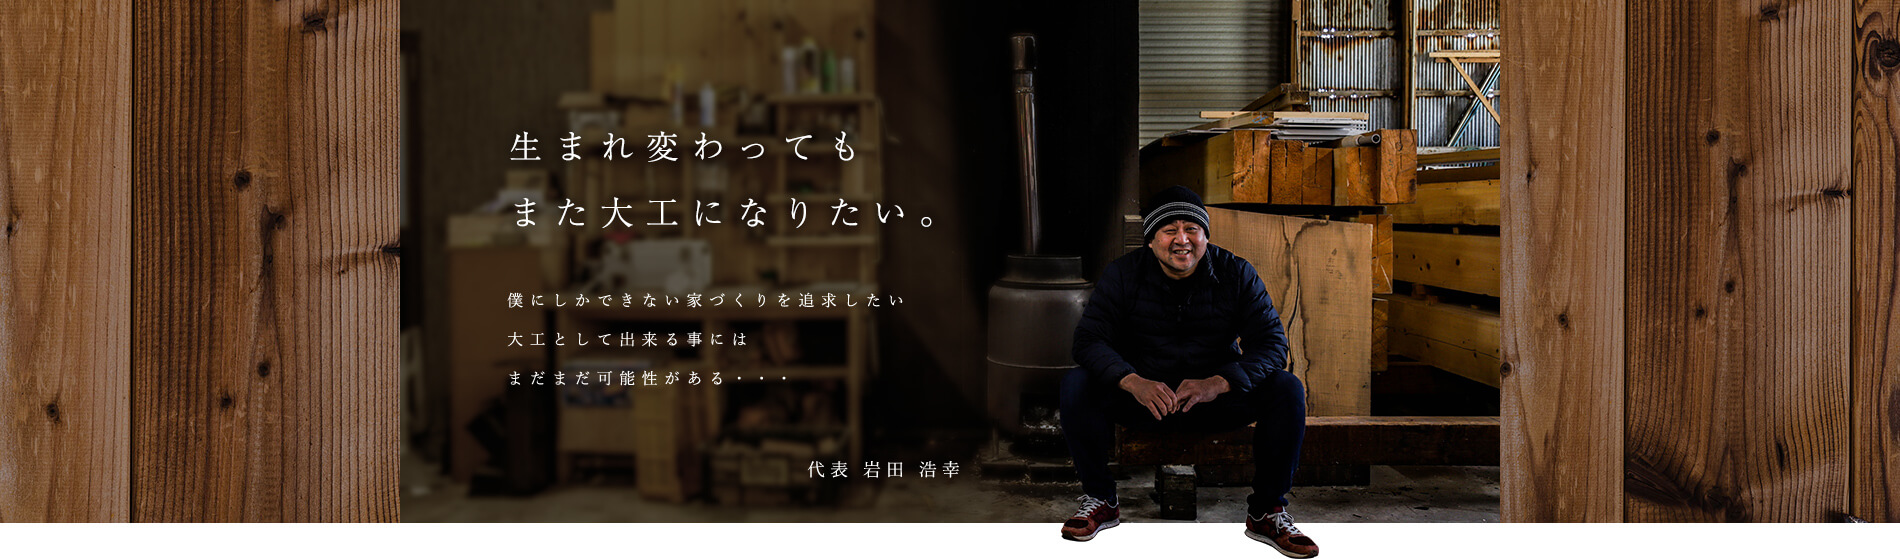 生まれ変わってもまた大工になりたい。 代表 岩田 浩幸